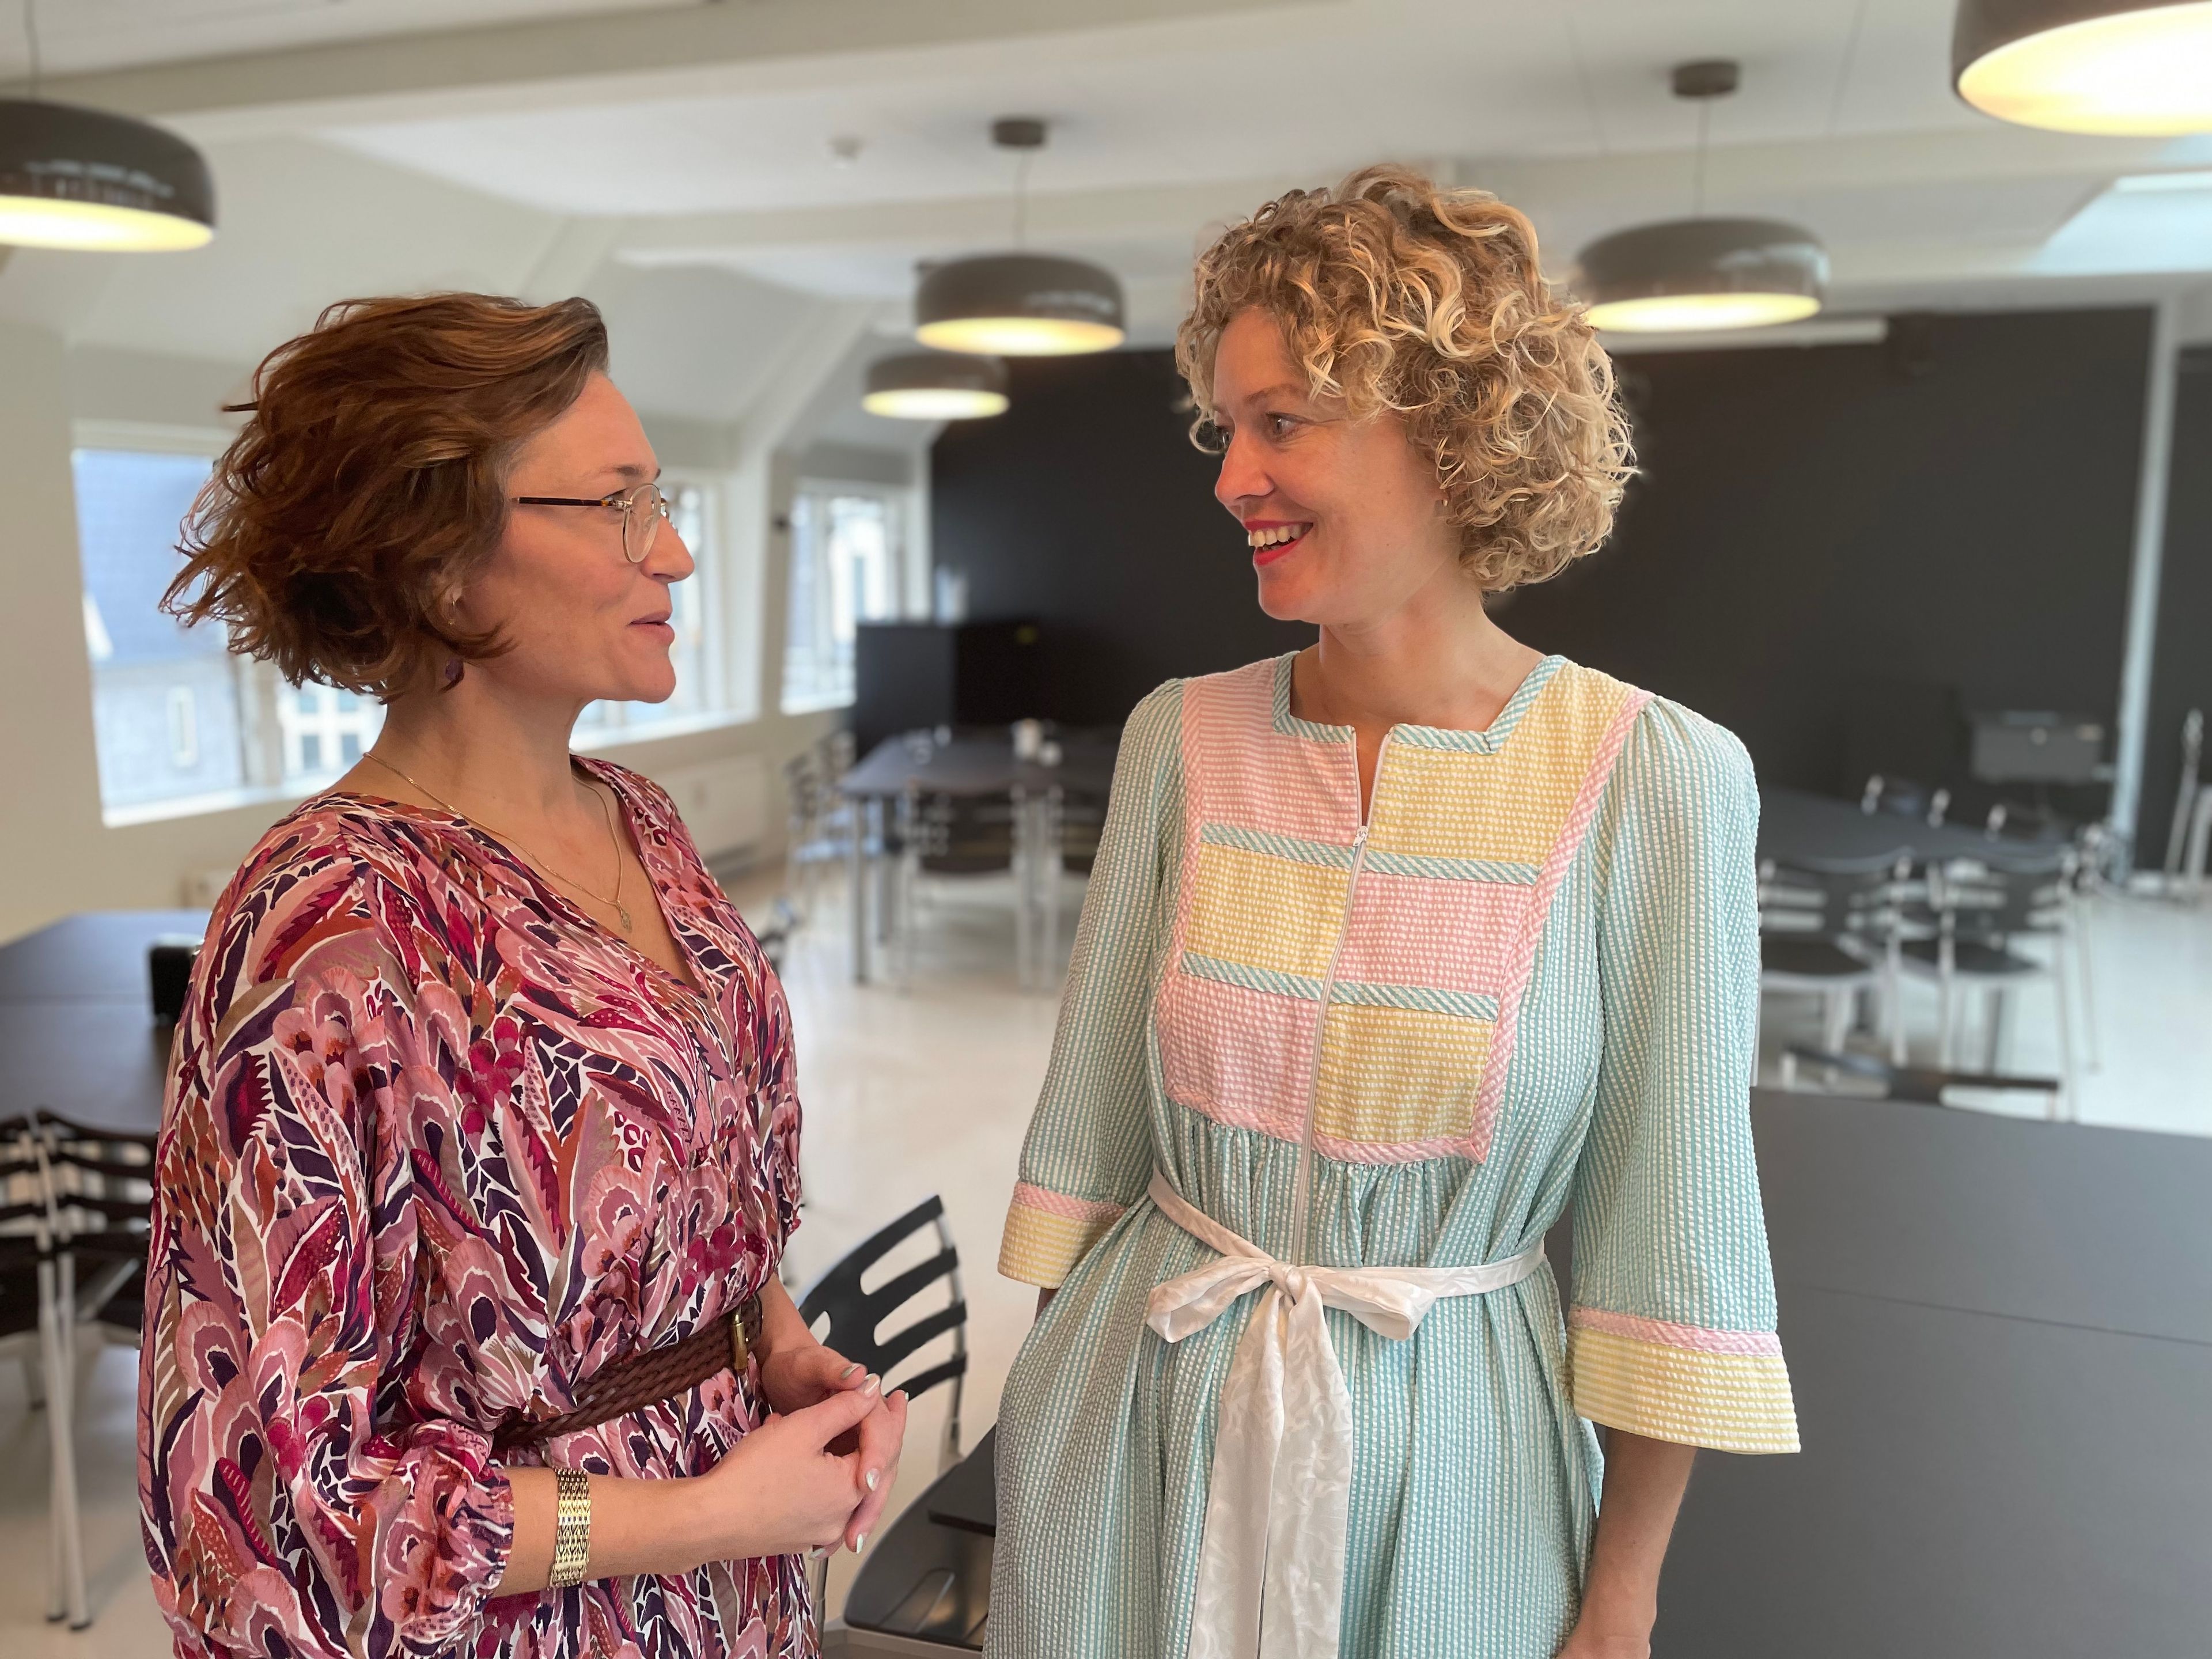 Mia Wagner og Astrid Haug i samtale ved fredagens K-Boost, der blev til i samarbejde mellem Kforum og Mynewsdesk.